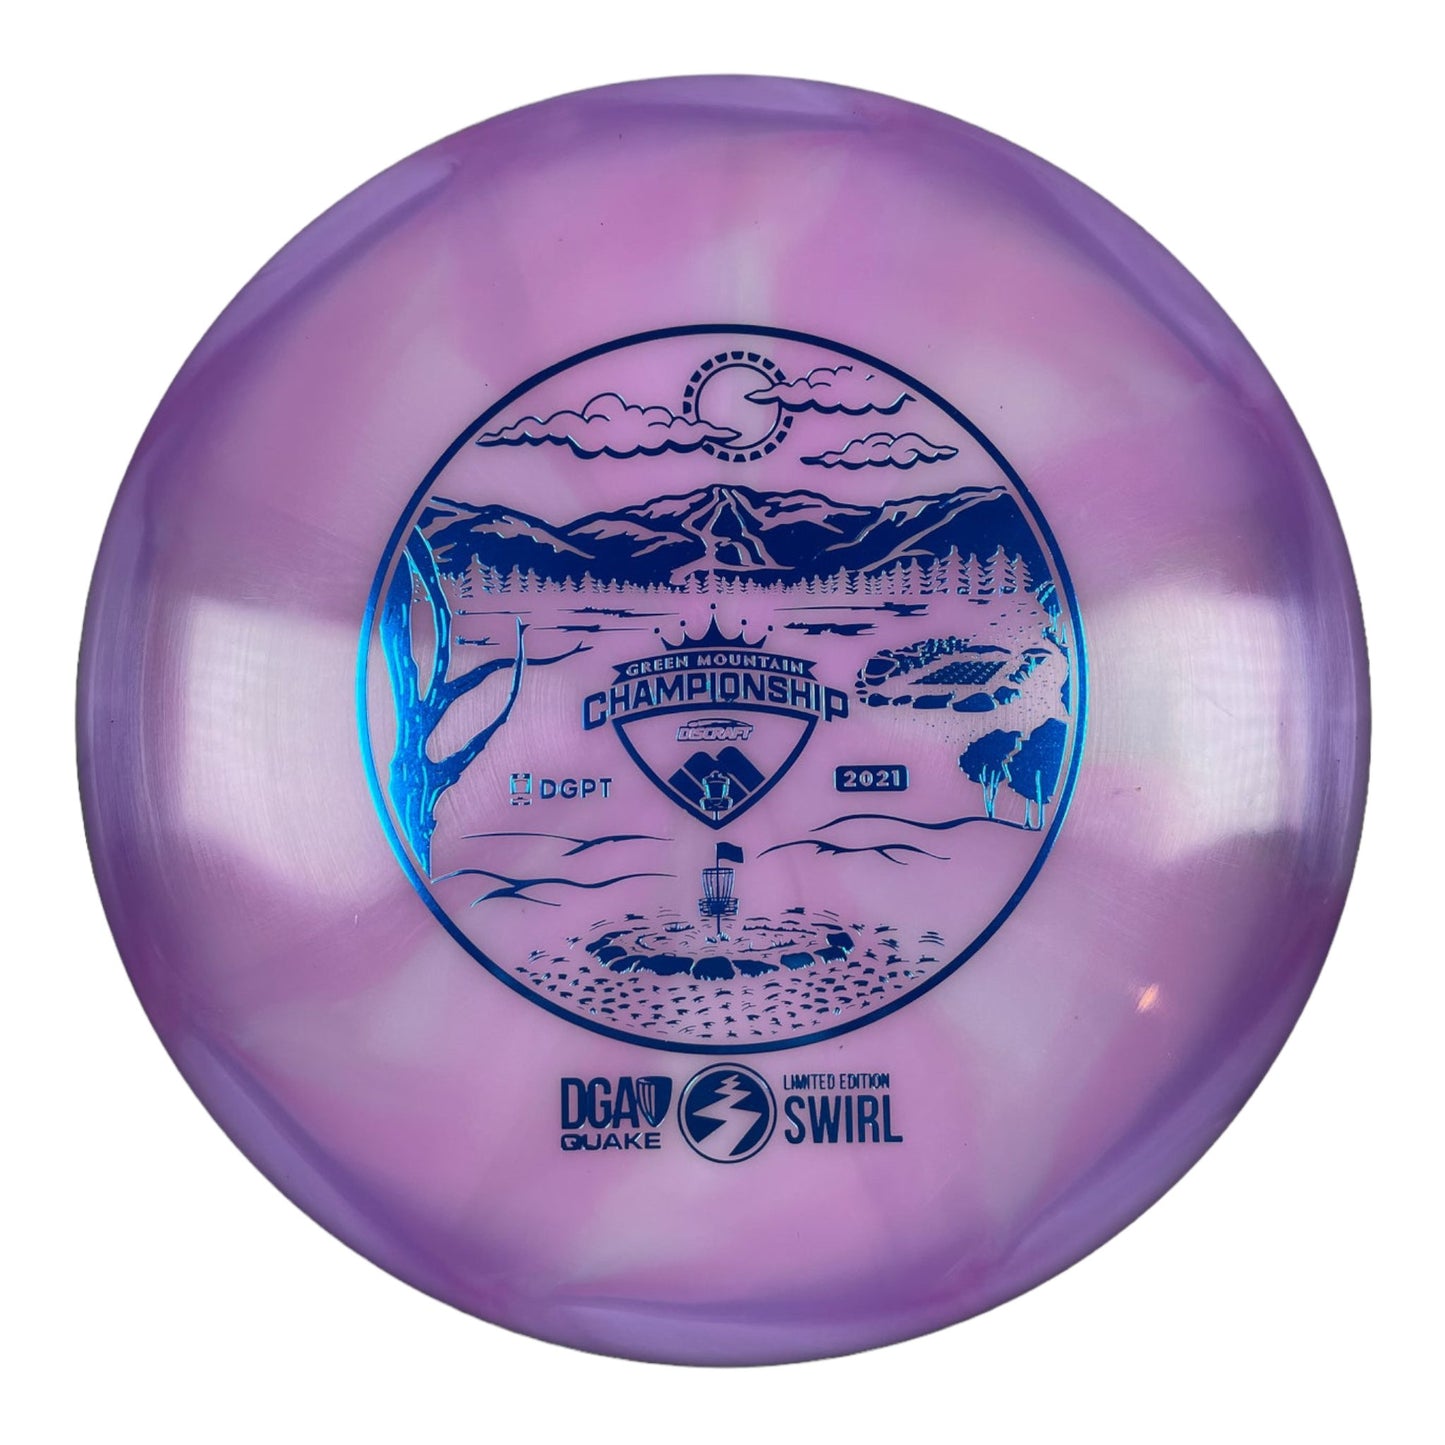 DGA Quake | Swirl | Purple/Blue 175g Disc Golf